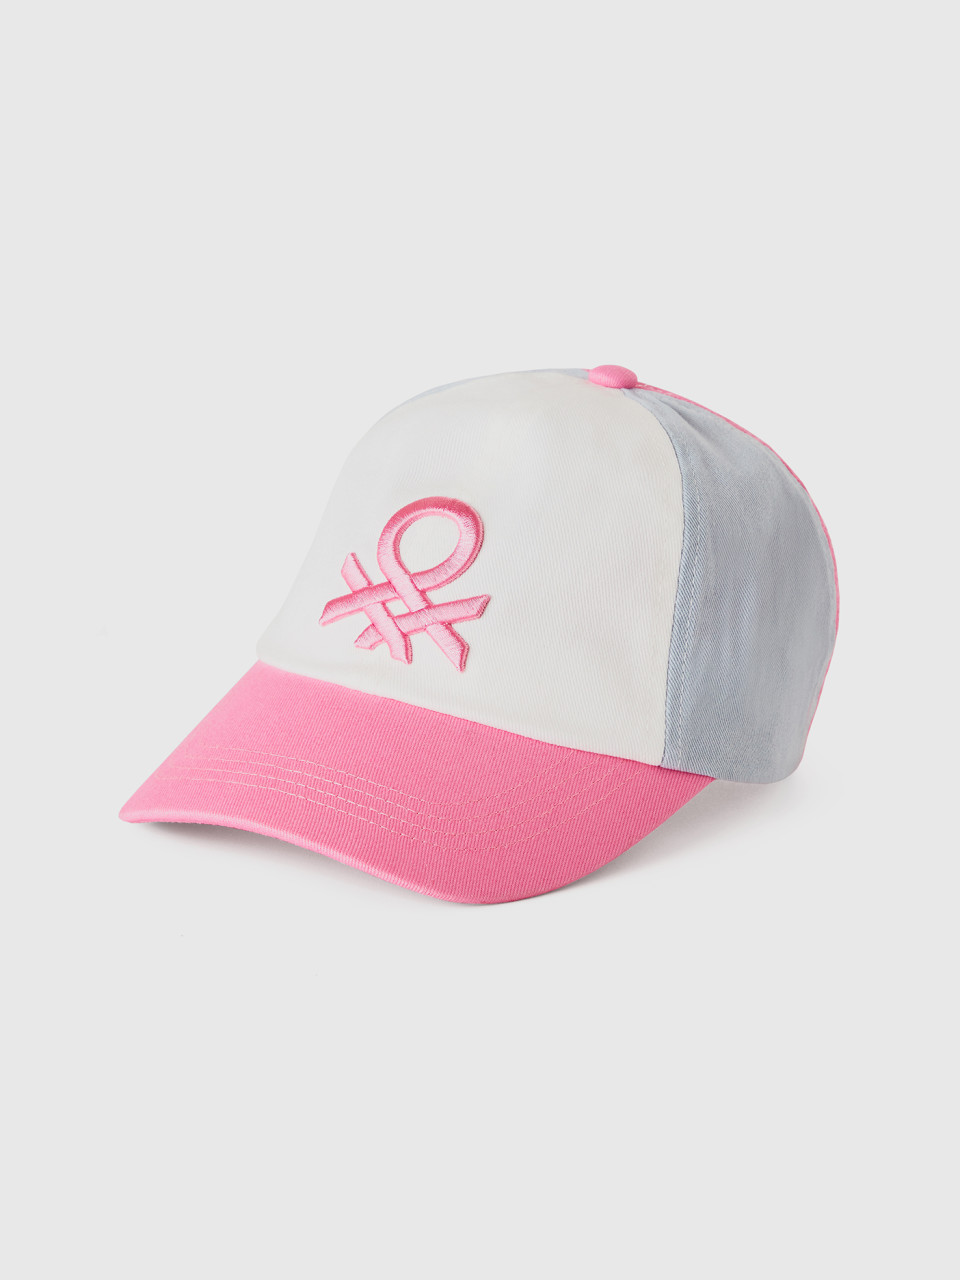 Benetton, Baseballcap Mit Logo, Pink, female